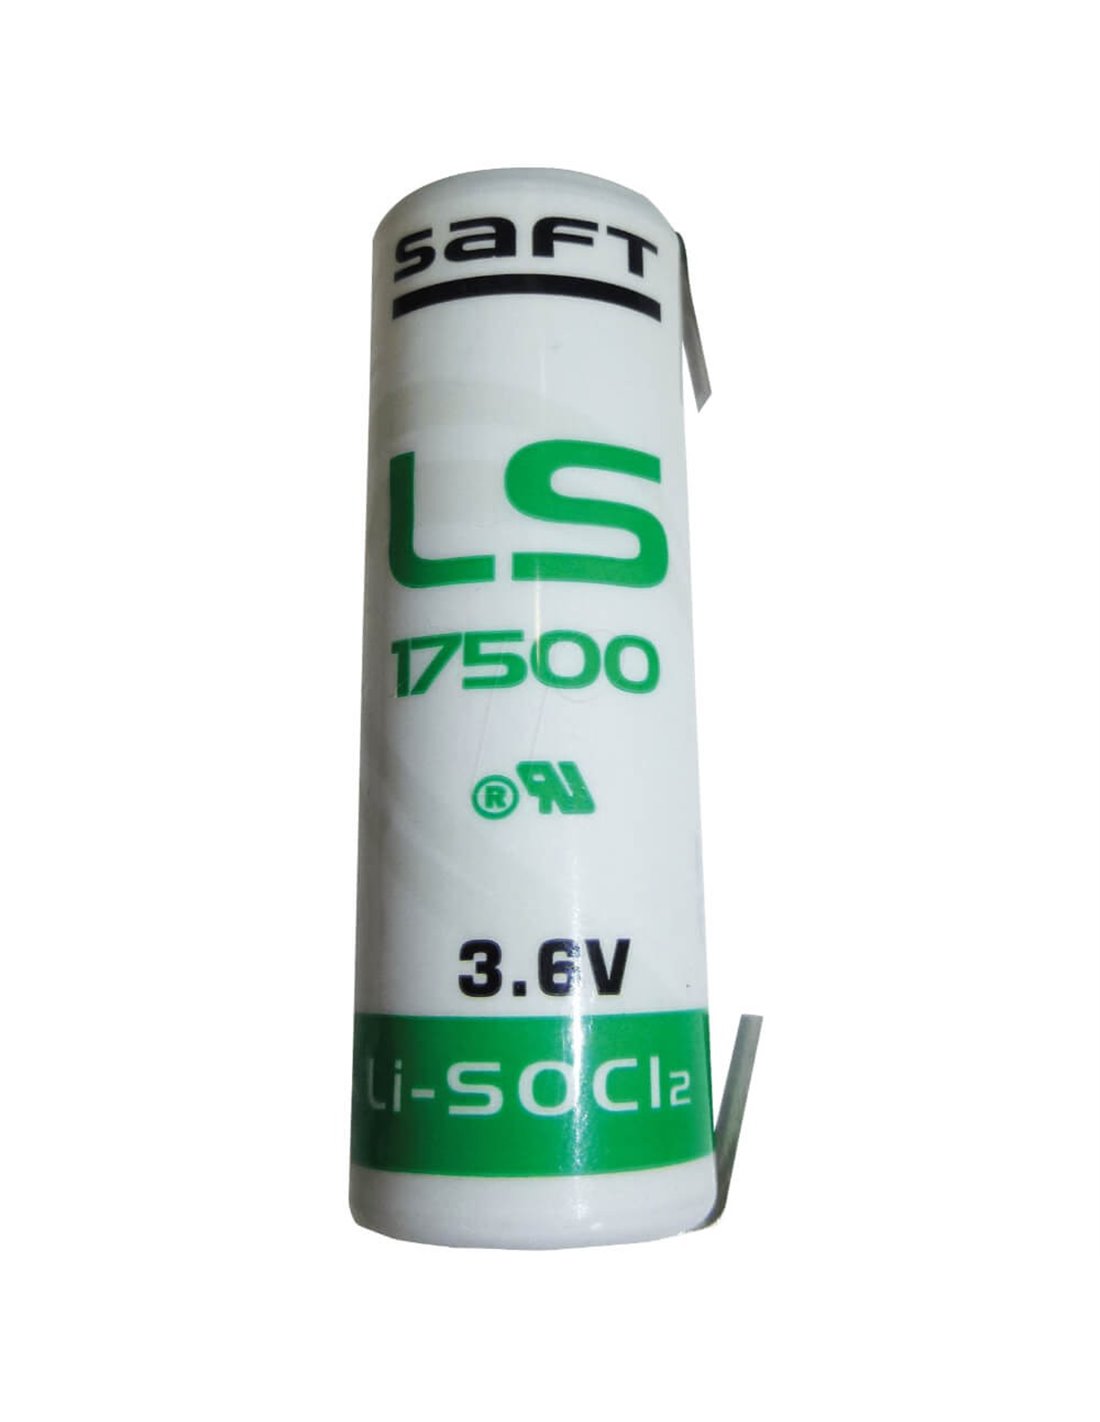 Saft LS17500 Tabs (Same Direction) 3.6V 3600Mah